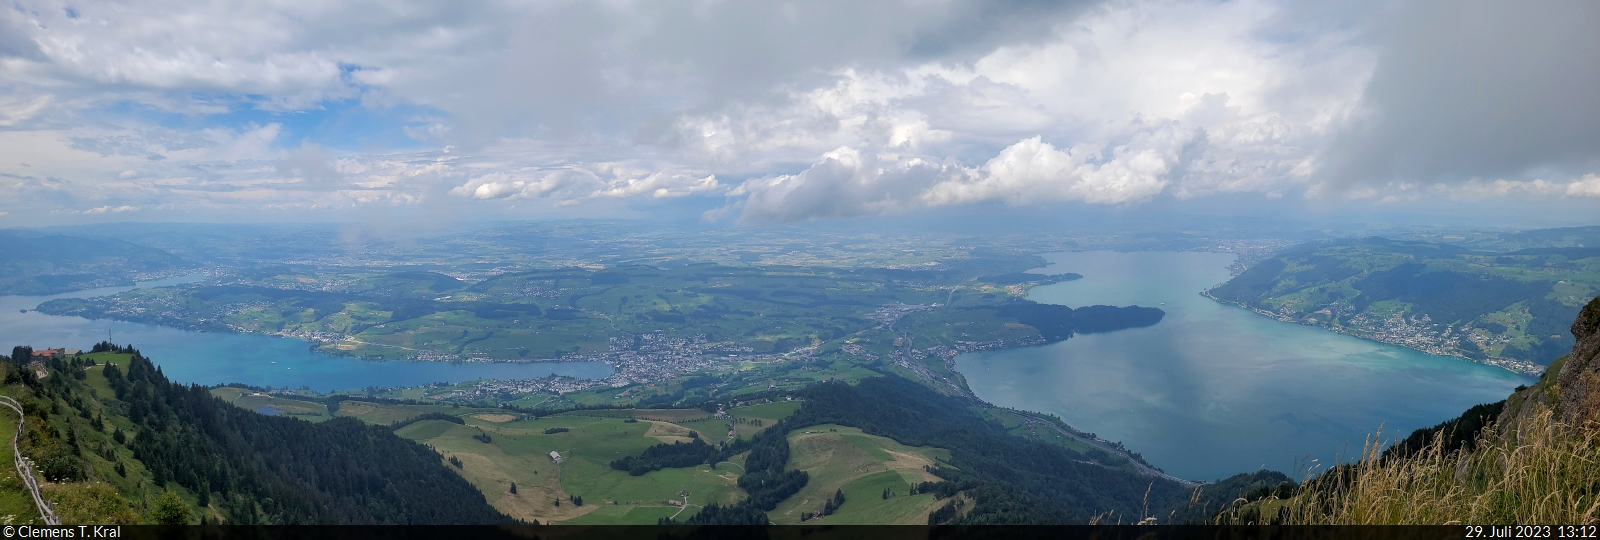 Panorama vom 1797 Meter hohen Gipfel der Rigi über den Vierwaldstättersee (links) und Zugersee.

🕓 29.7.2023 | 13:12 Uhr